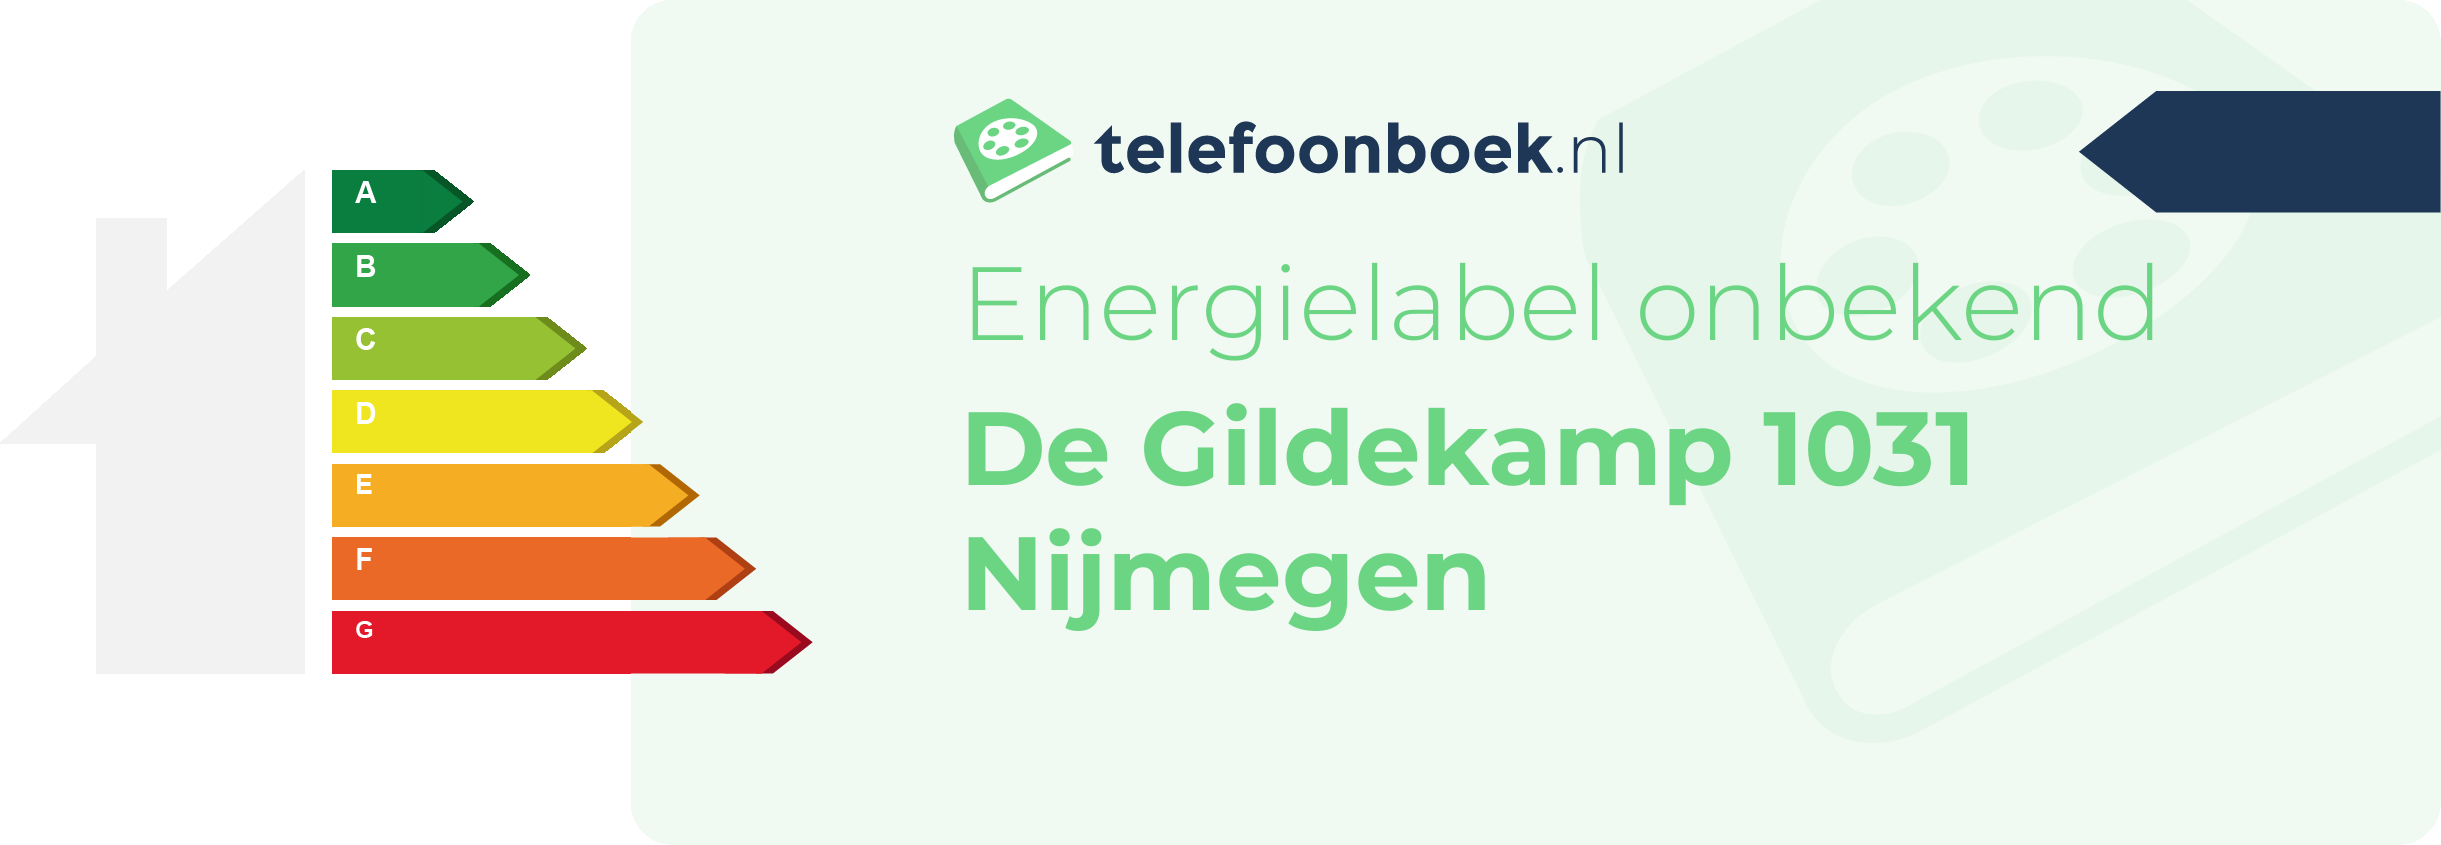 Energielabel De Gildekamp 1031 Nijmegen